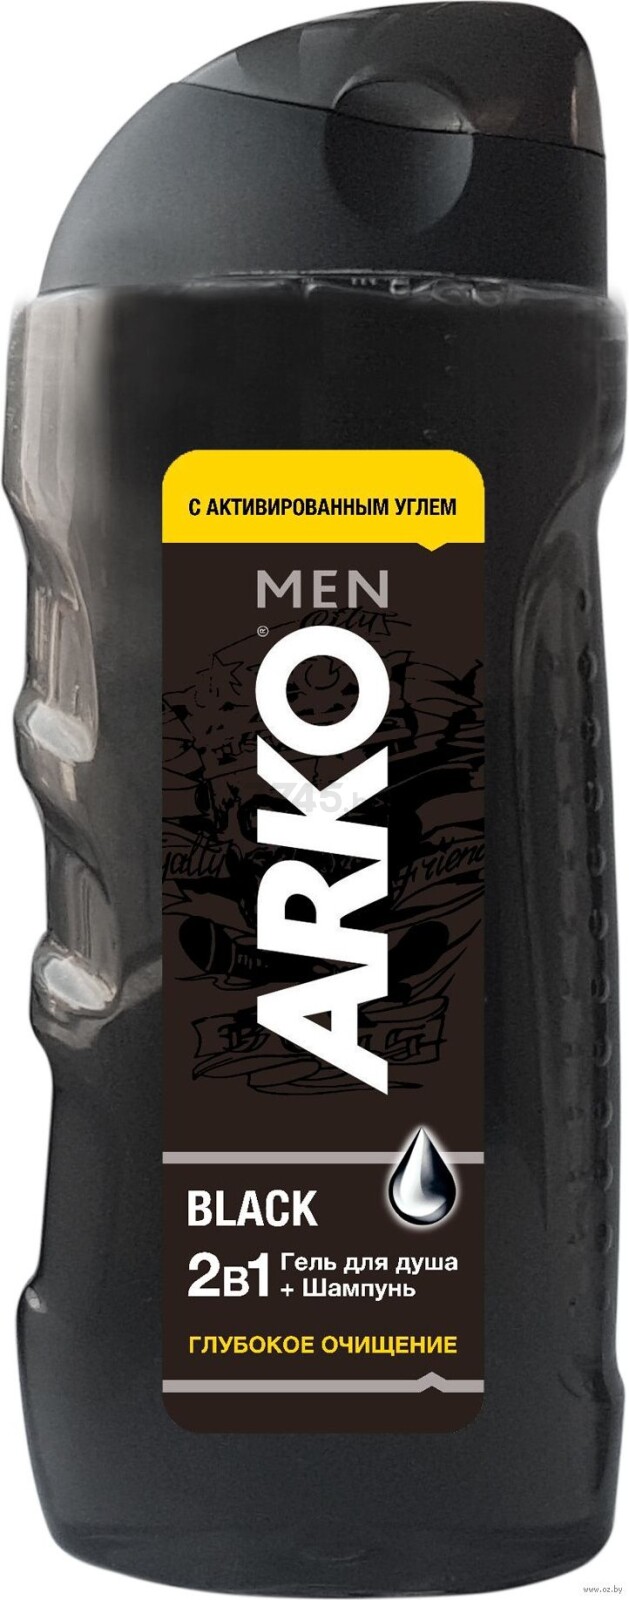 Гель-шампунь для душа ARKO Men BLACK 2в1 260 мл (8690506490843)